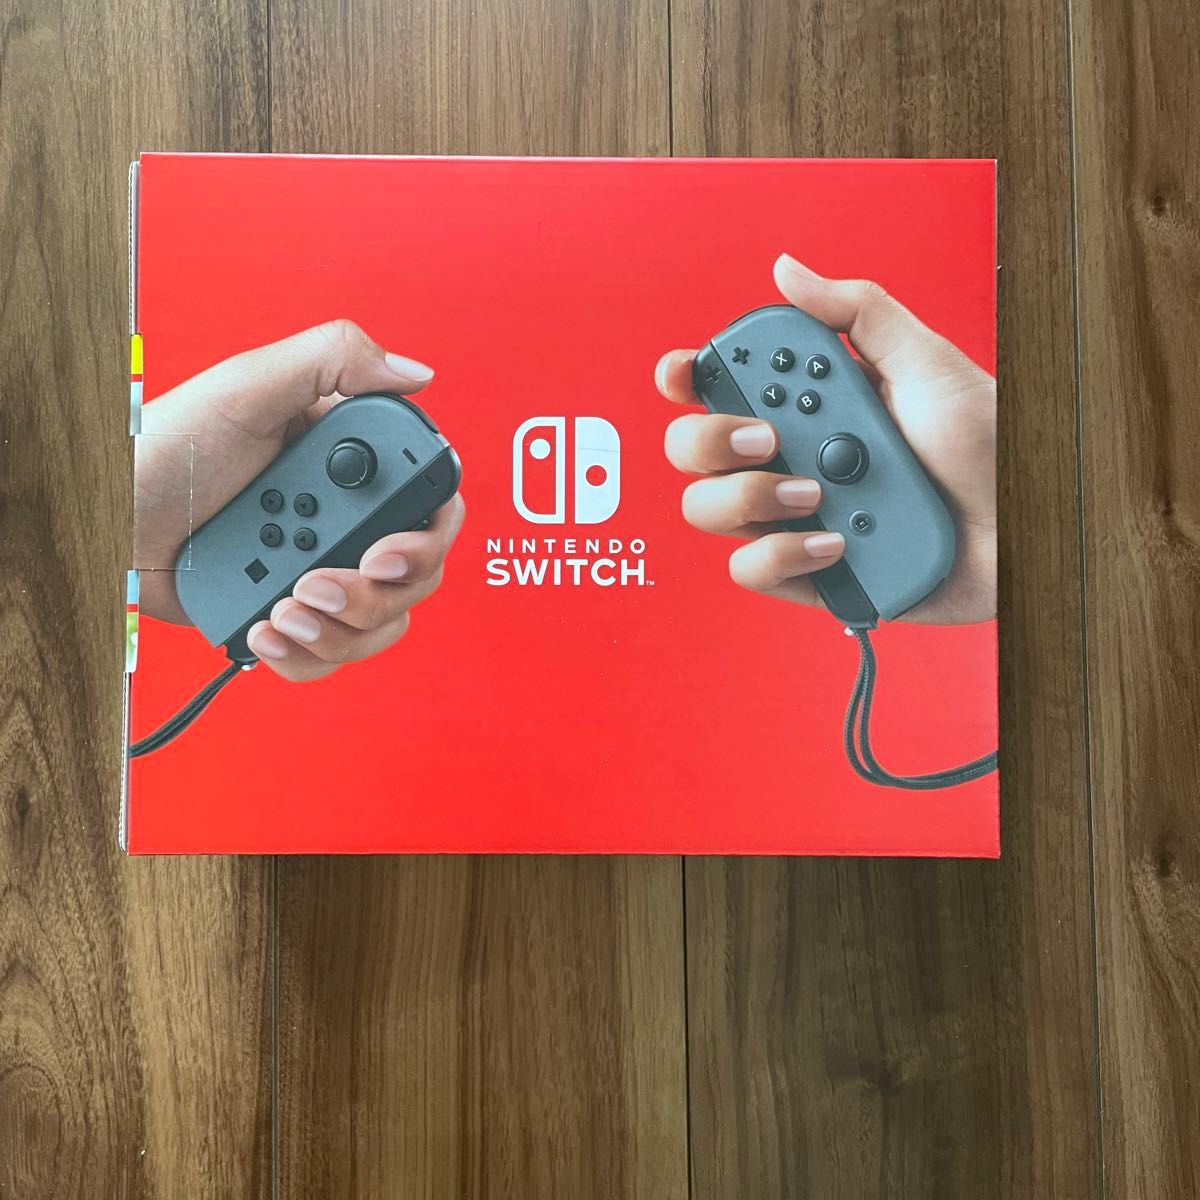 【即日発送可】新品未使用品 Nintendo Switch 本体 グレー